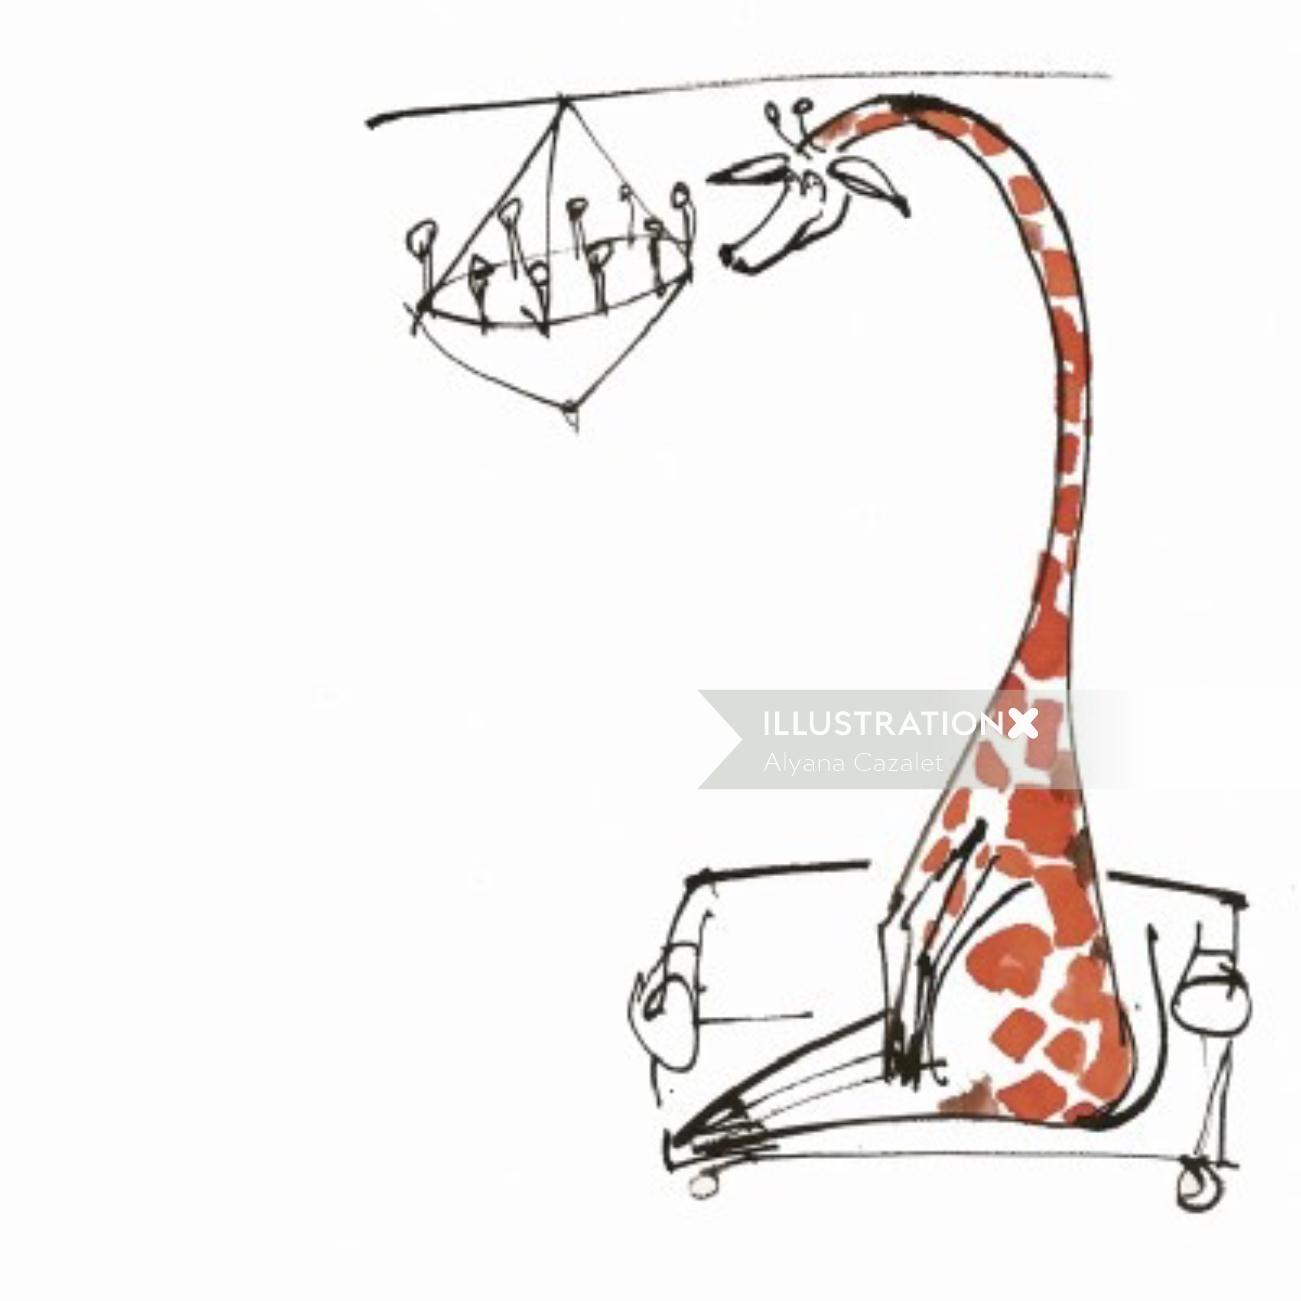 Comic giraffe illustration by Alyana Cazalet